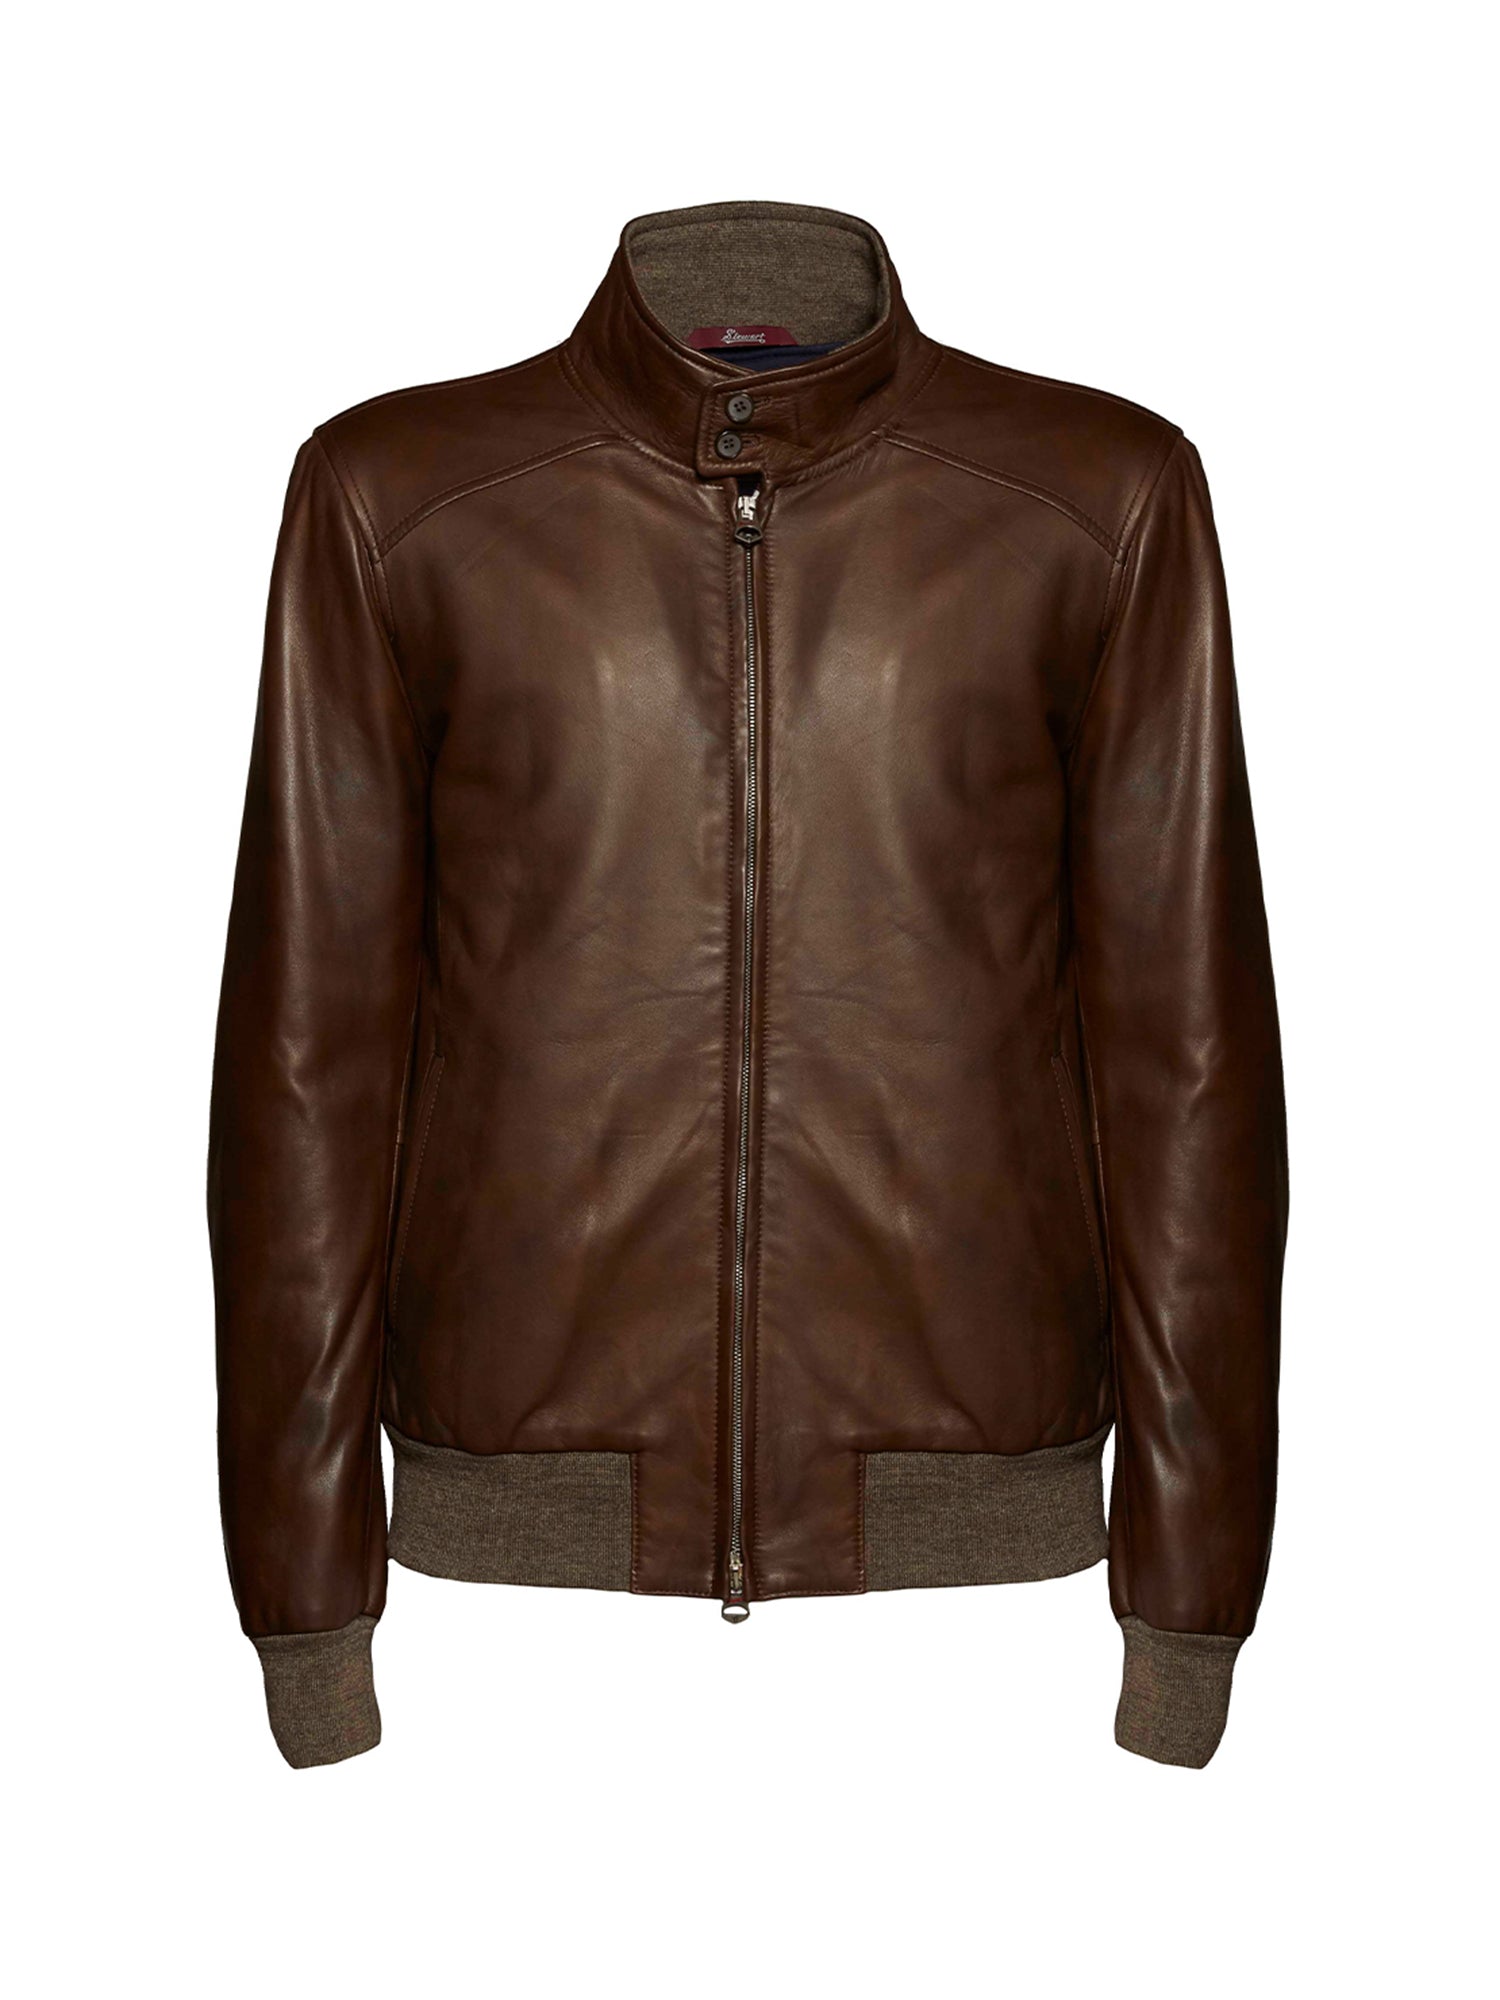 Stewart Premium Italian Leather Jackets– stewartit